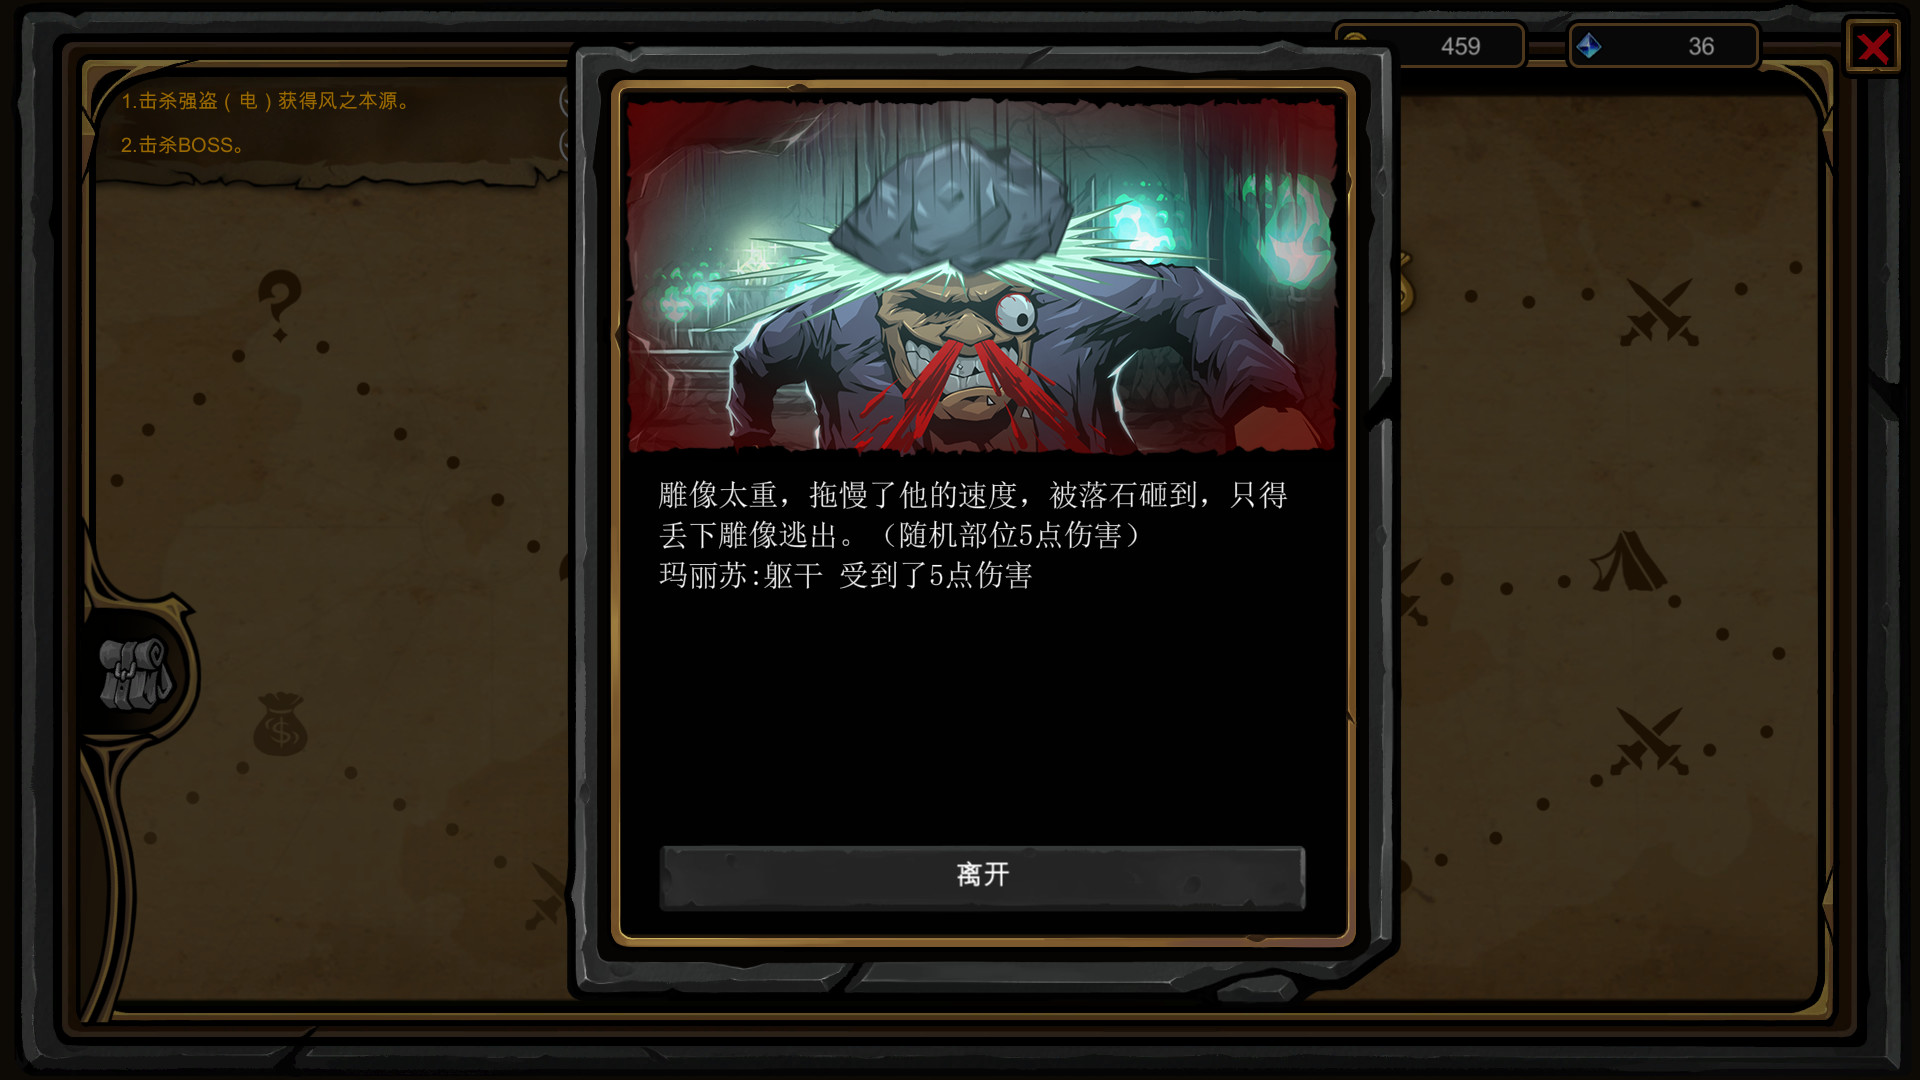 《不是地下城》免安装uild.7213550绿色中文版[5.51GB] 单机游戏 第8张